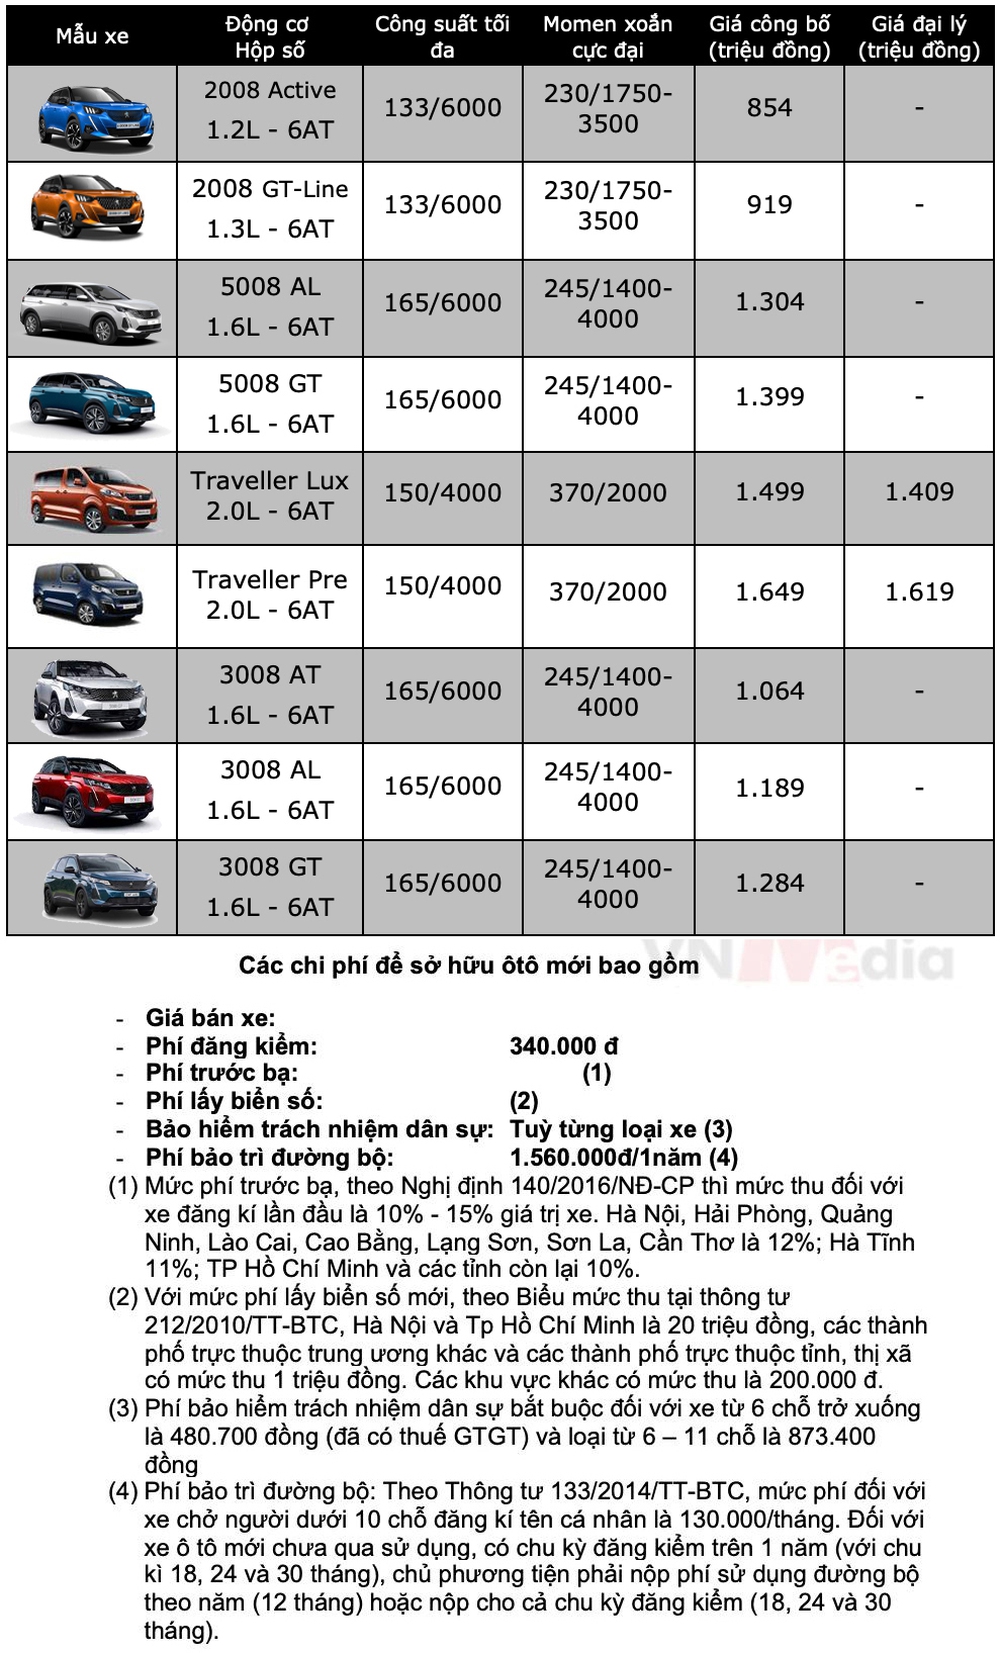 Bảng giá xe Peugeot tháng 2: Peugeot 3008 được ưu đãi tới 26 triệu đồng - Ảnh 2.